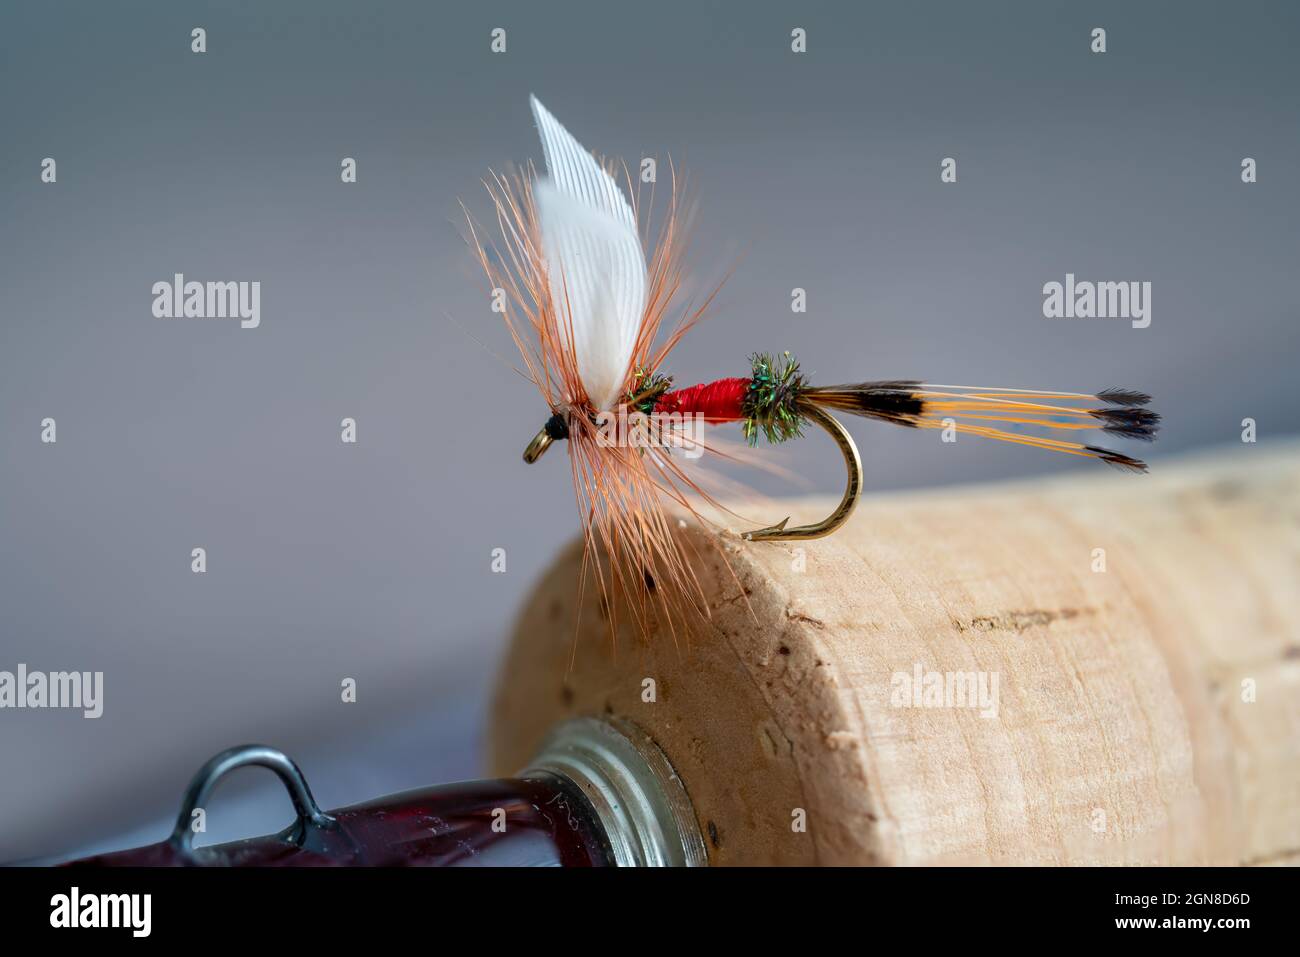 Dry Fly Box Case stock image. Image of tying, fishing - 114072395